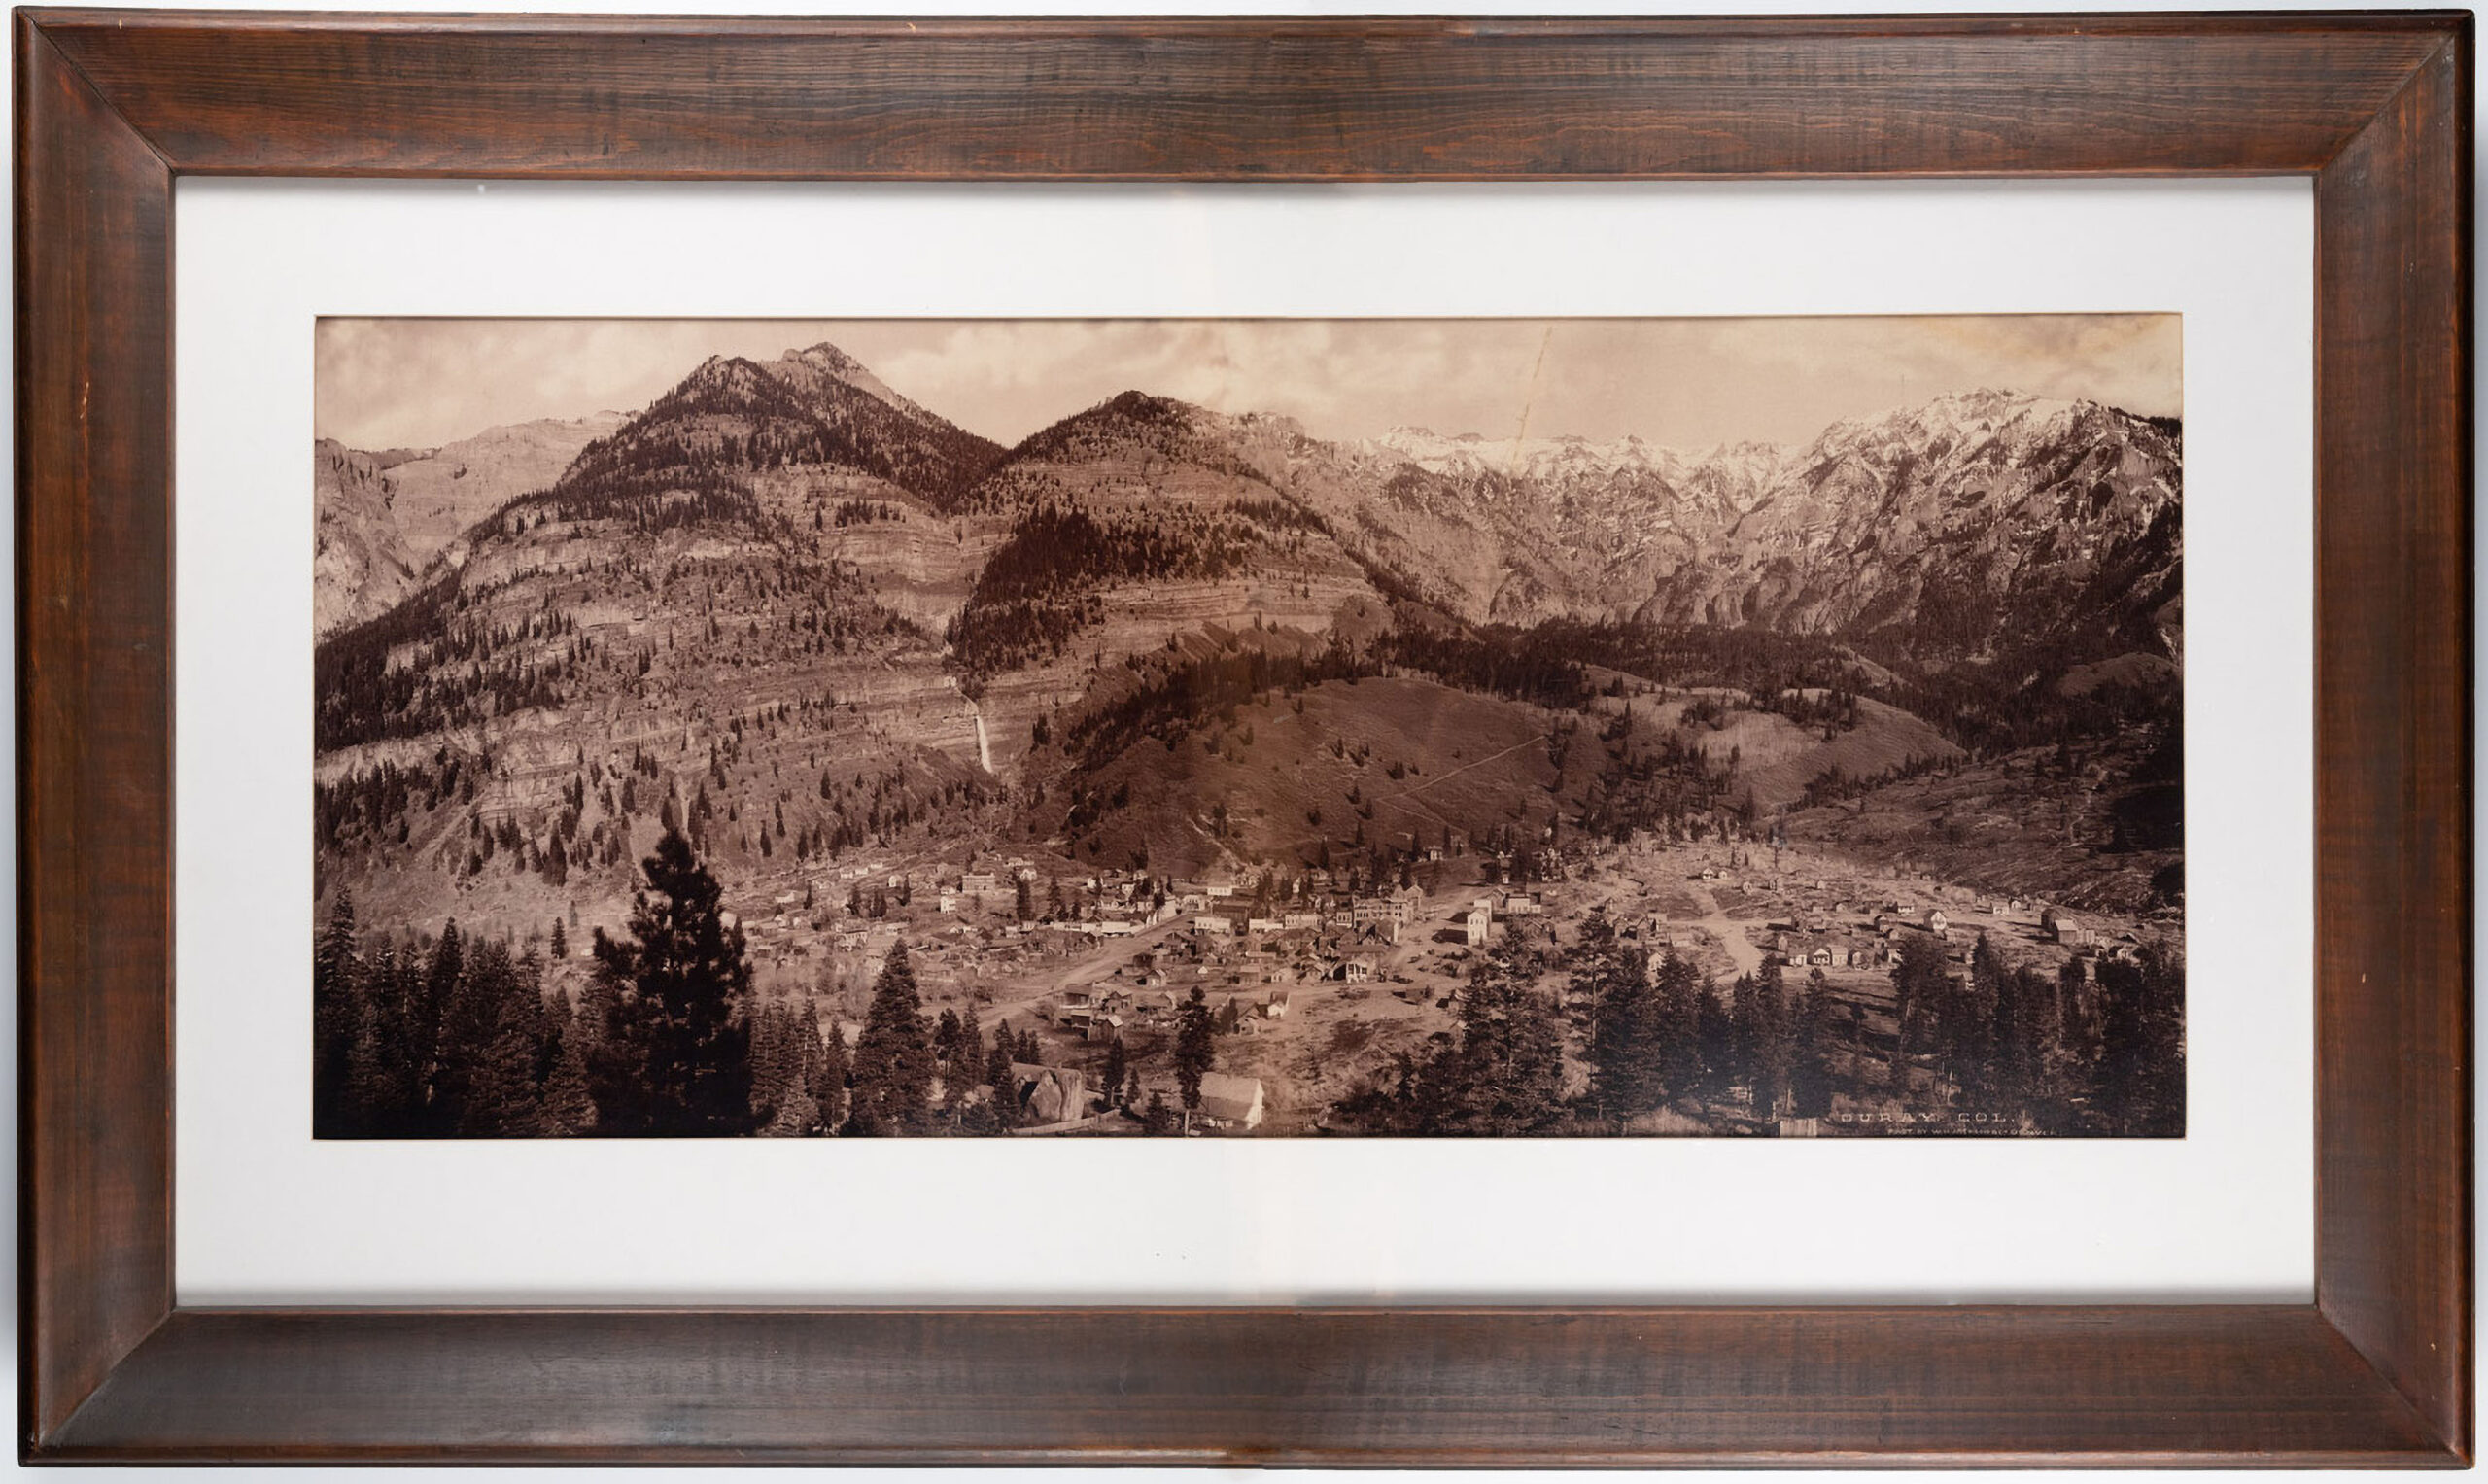 OURAY COLORADO original panoramic photograph, 1886, WILLIAM HENRY JACKSON